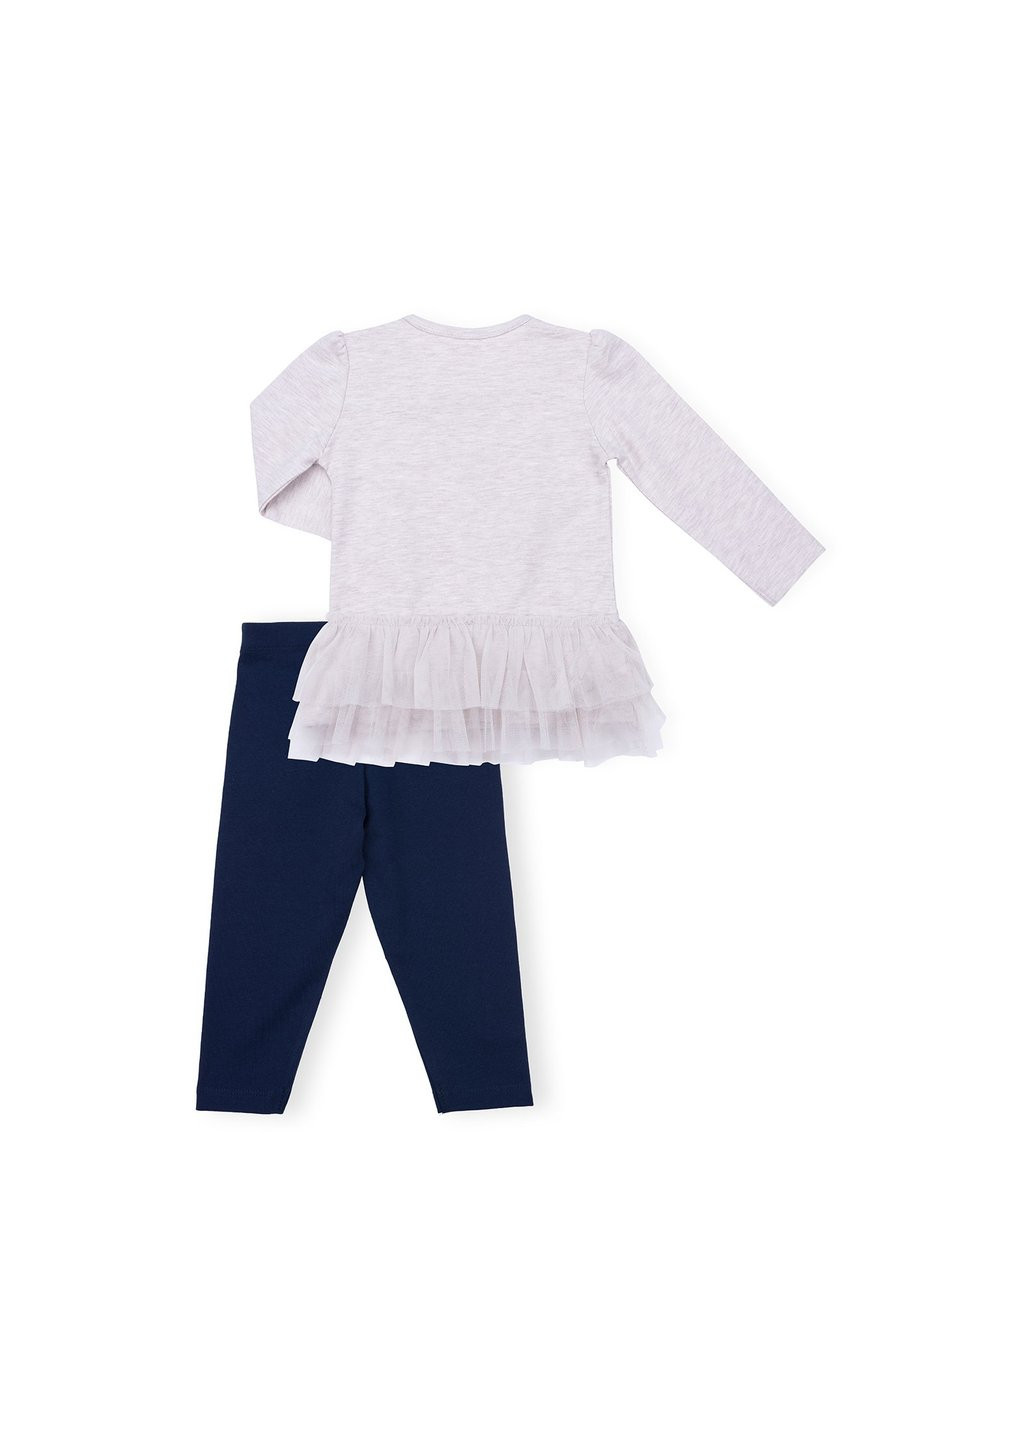 Комбинированный демисезонный набор детской одежды с лебедем (9959-86g-beige) Breeze